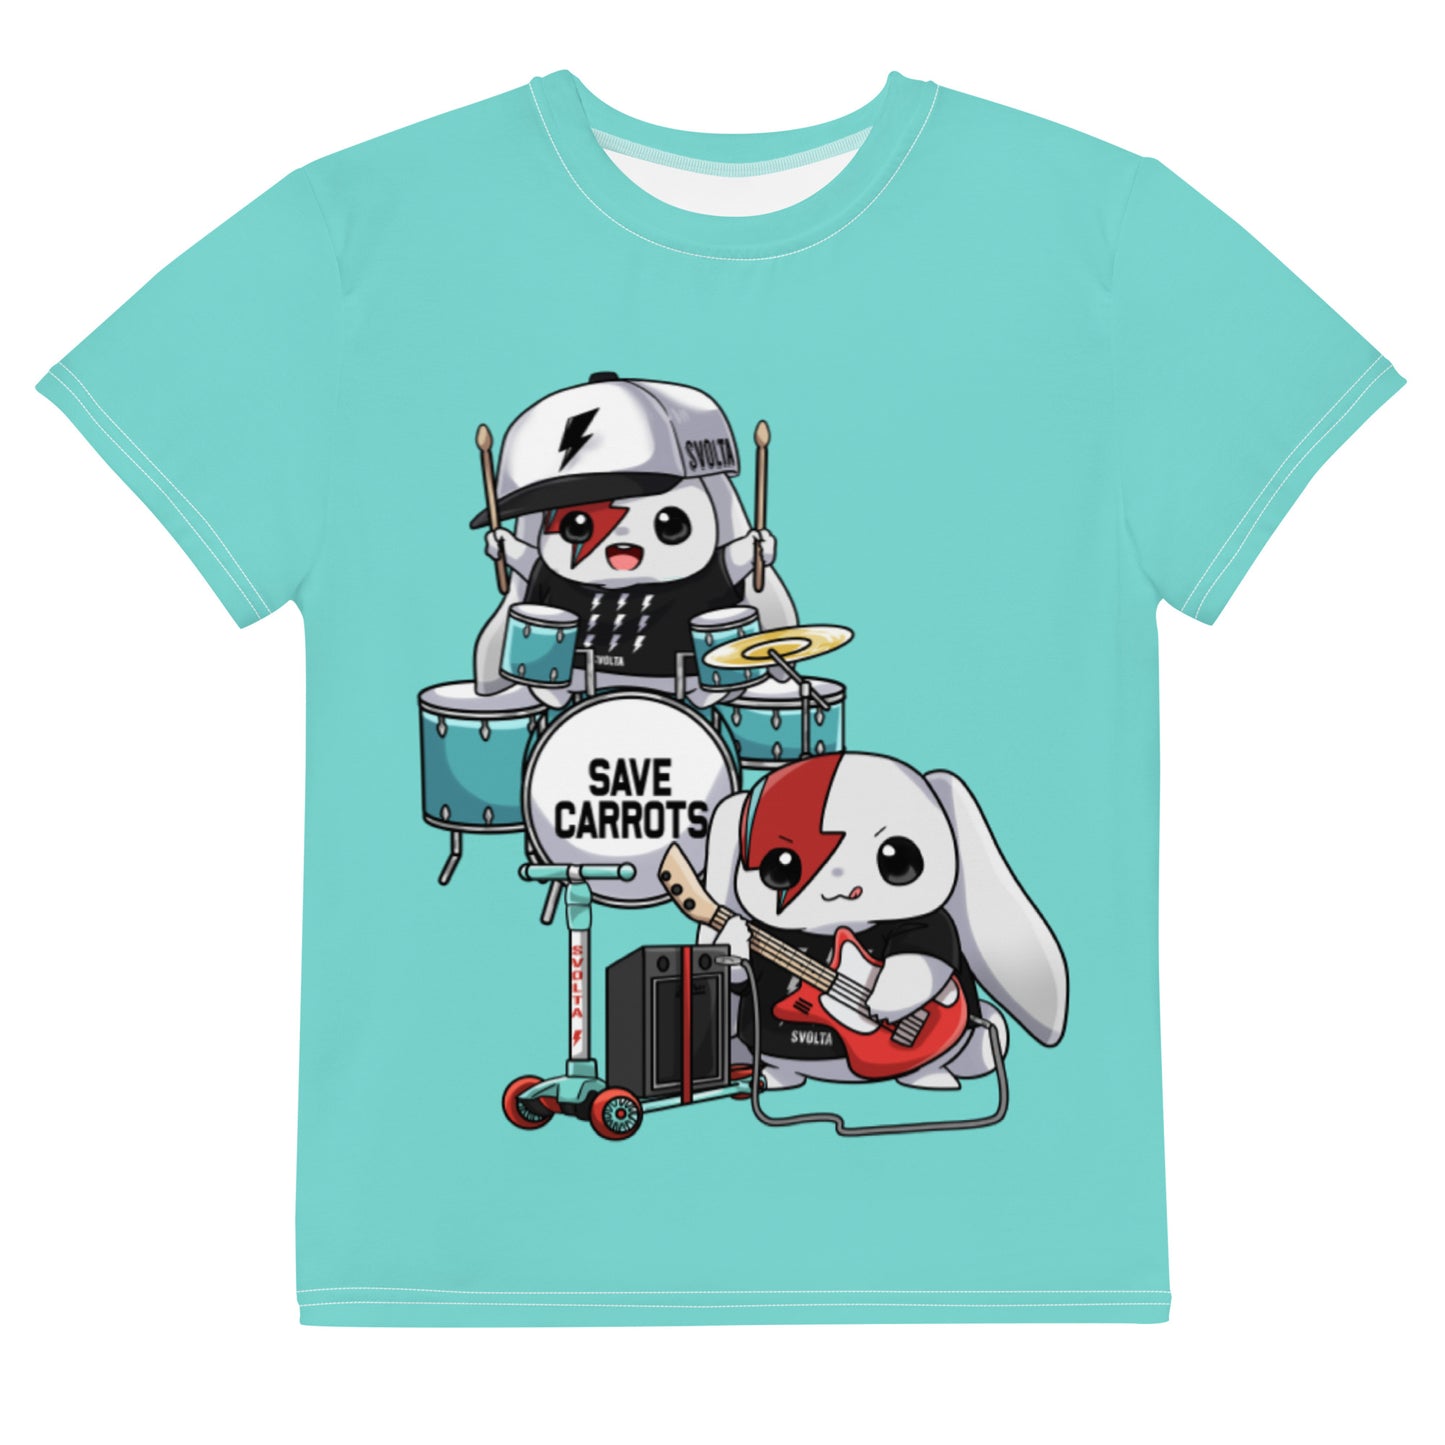 SVOLTA Kawaii Rebel Rock Duo T-shirt in Aqua, 8-20 - Kids/Youth